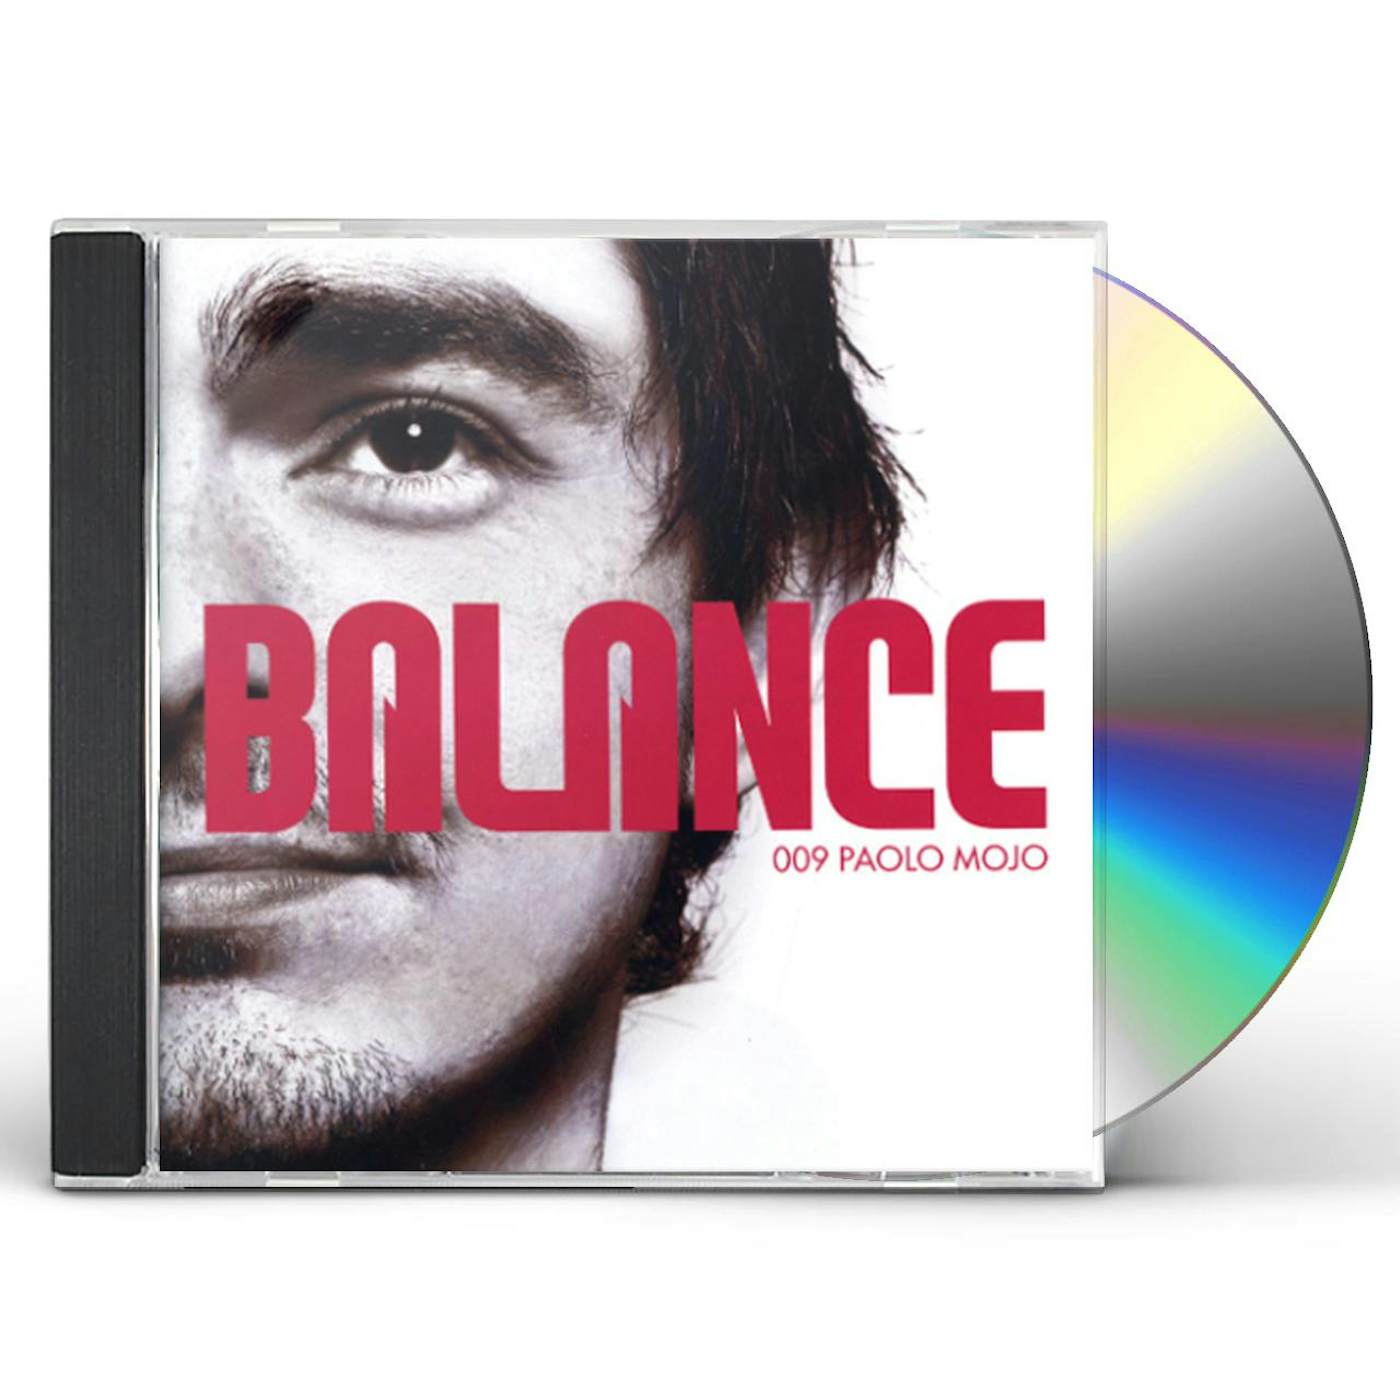 Paolo Mojo BALANCE 009 CD